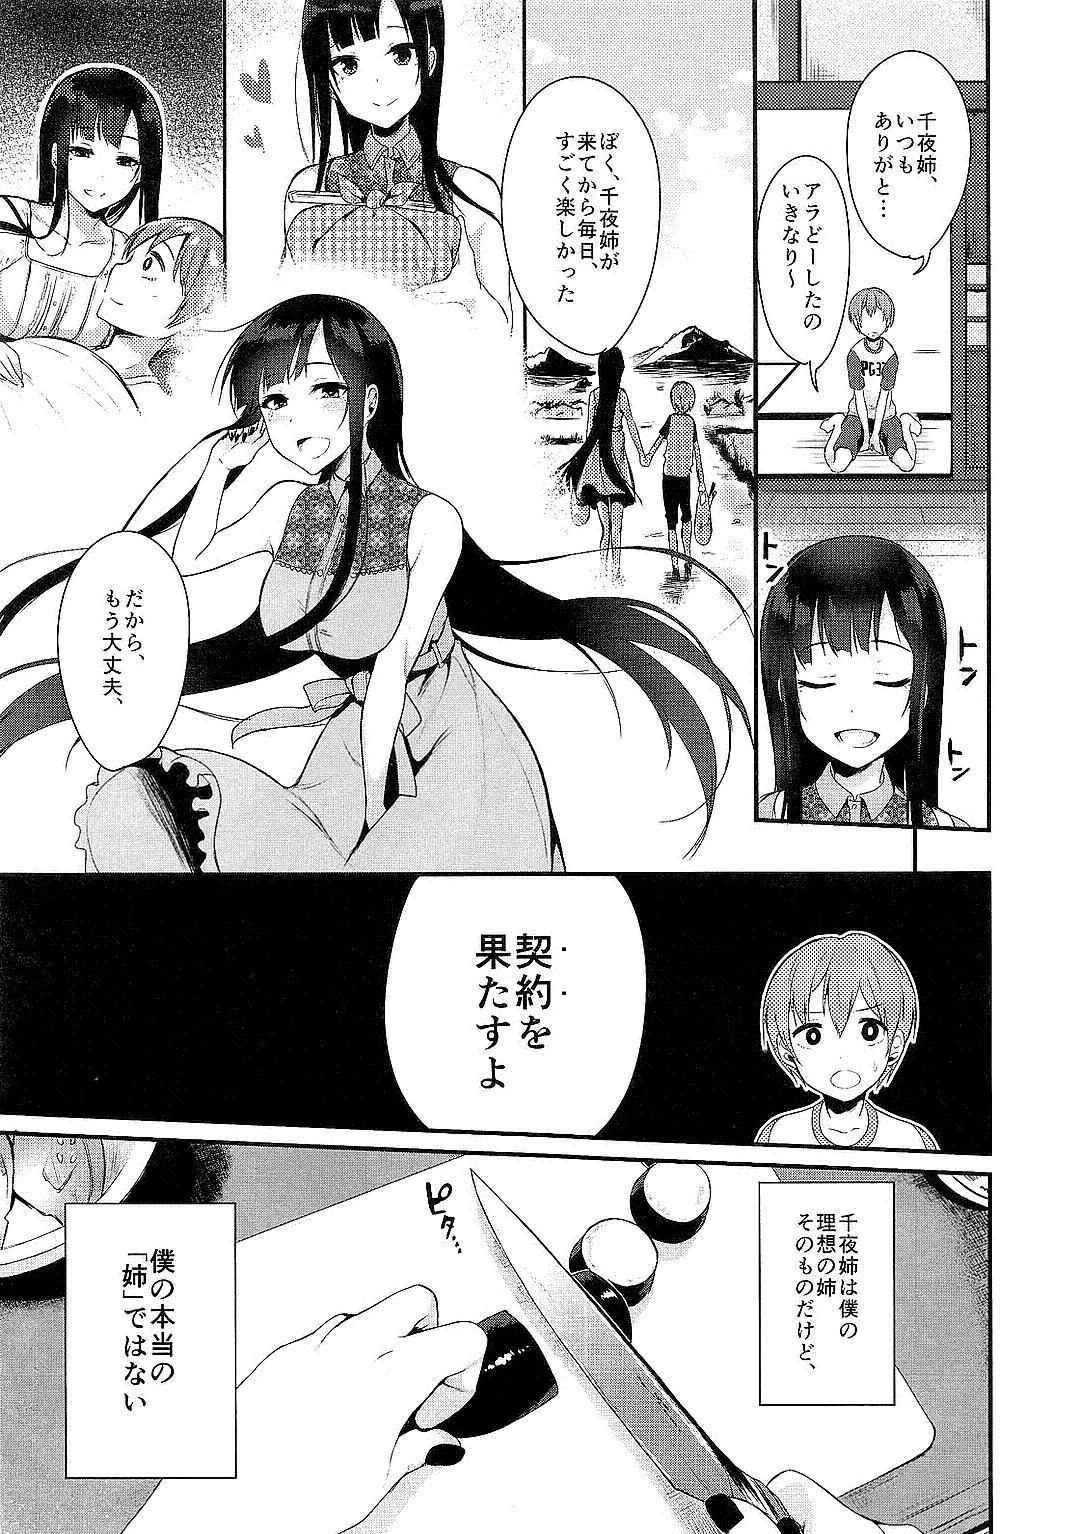 Bra Ane Naru Mono Zenshuu 1 - Ane naru mono This - Page 9